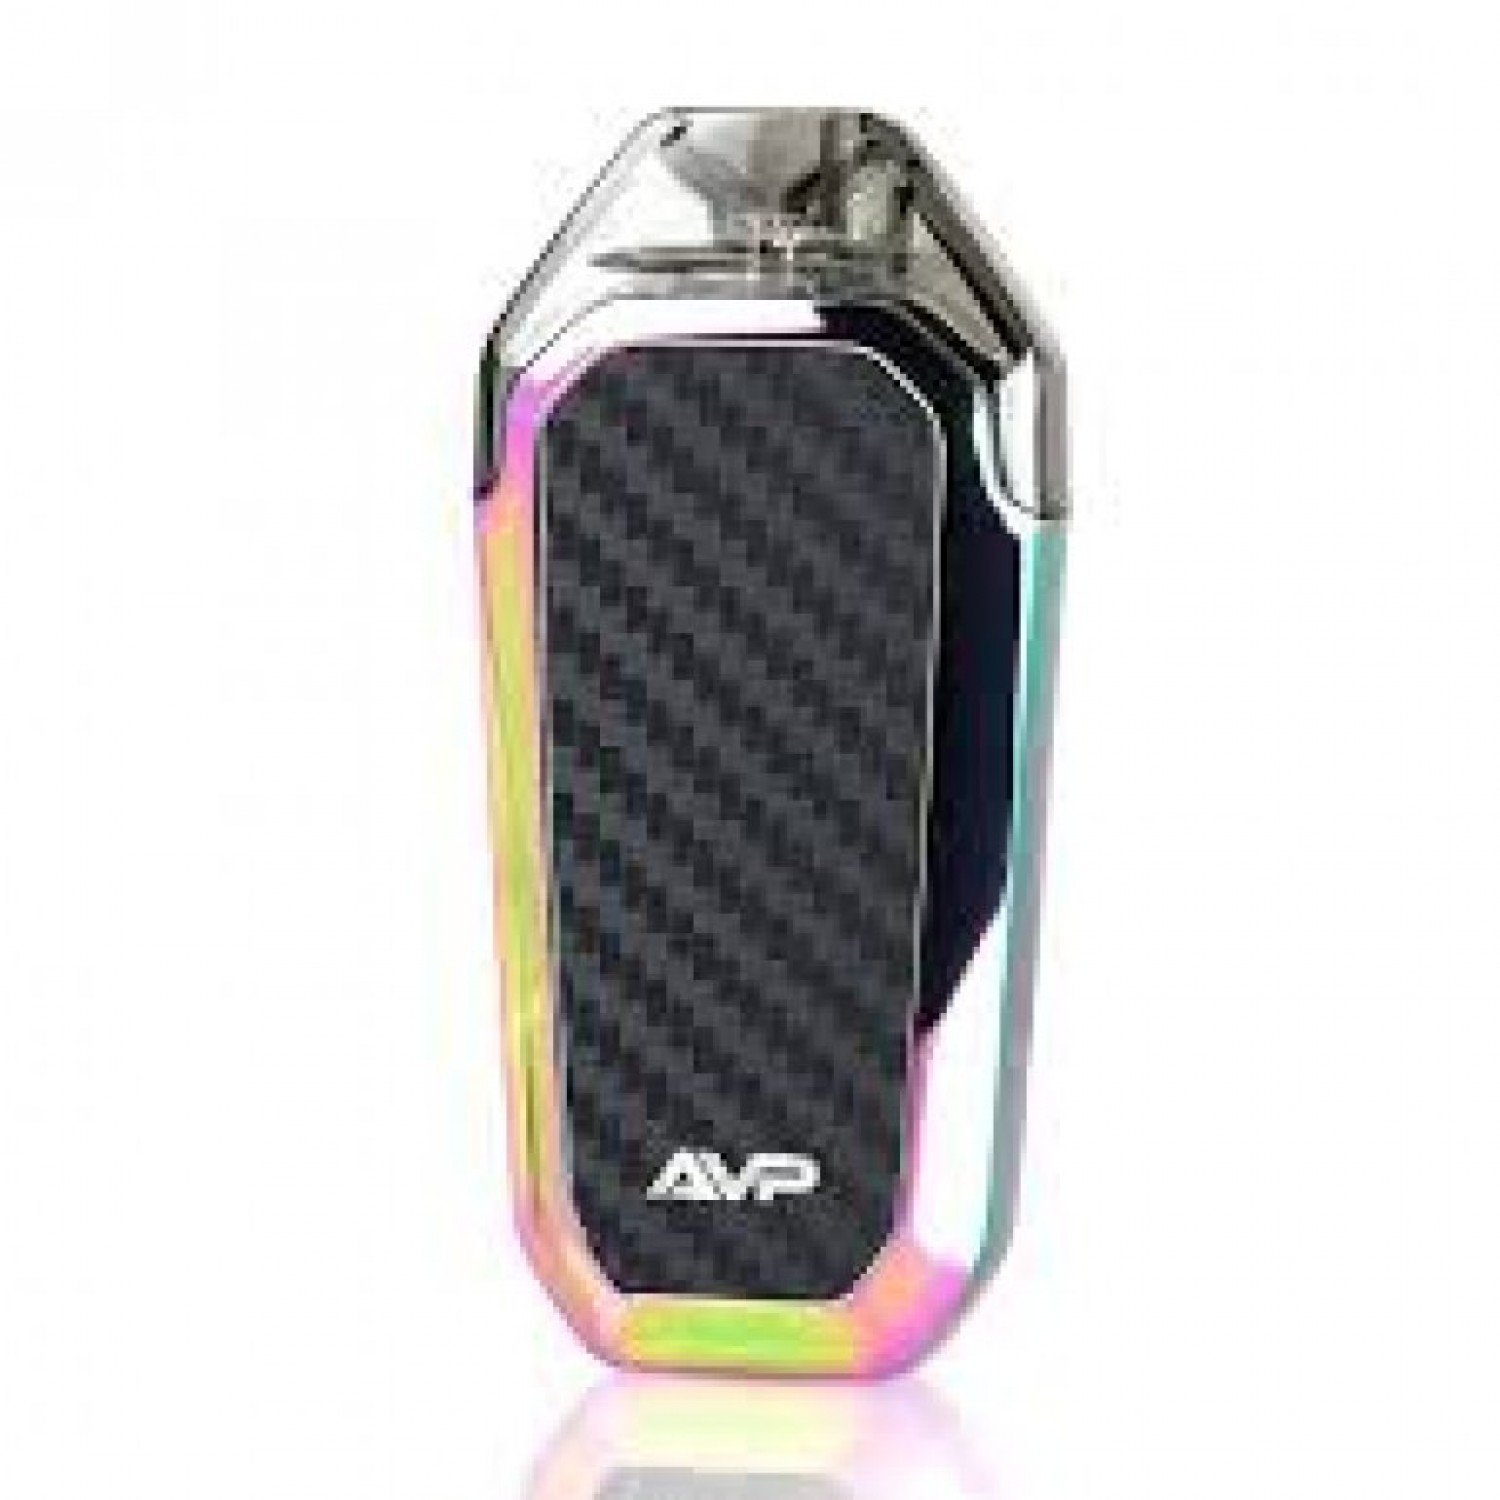 Aspire AVP AIO Kit Pod Mod Elektronik Sigara Kit